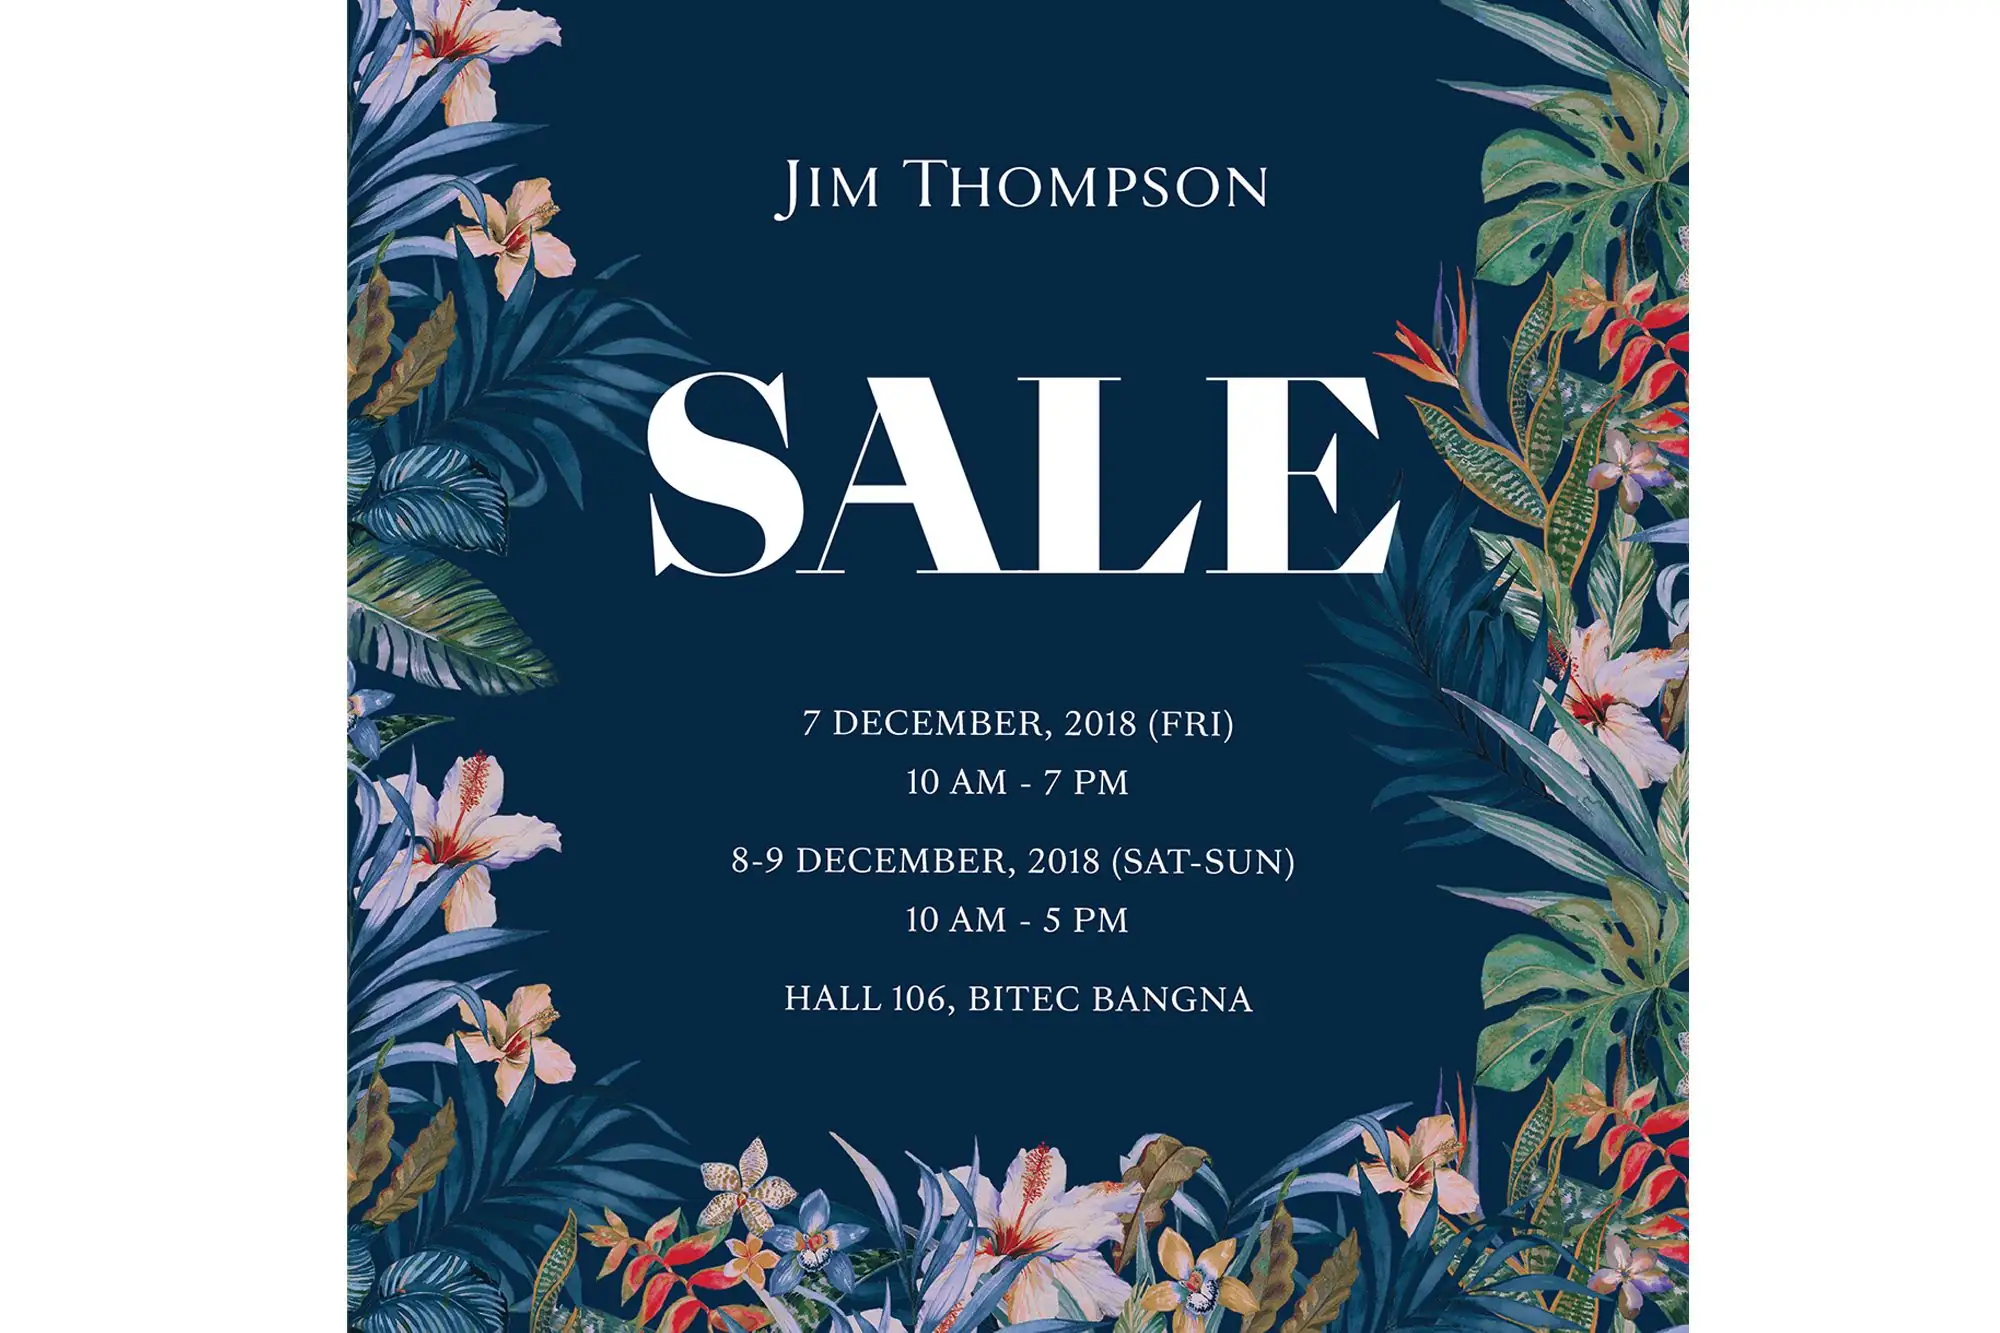 金湯普森 促銷 Jim Thompson Sale 2018 金湯普森 特賣會 金湯普森農場 Jim Thompson Farm